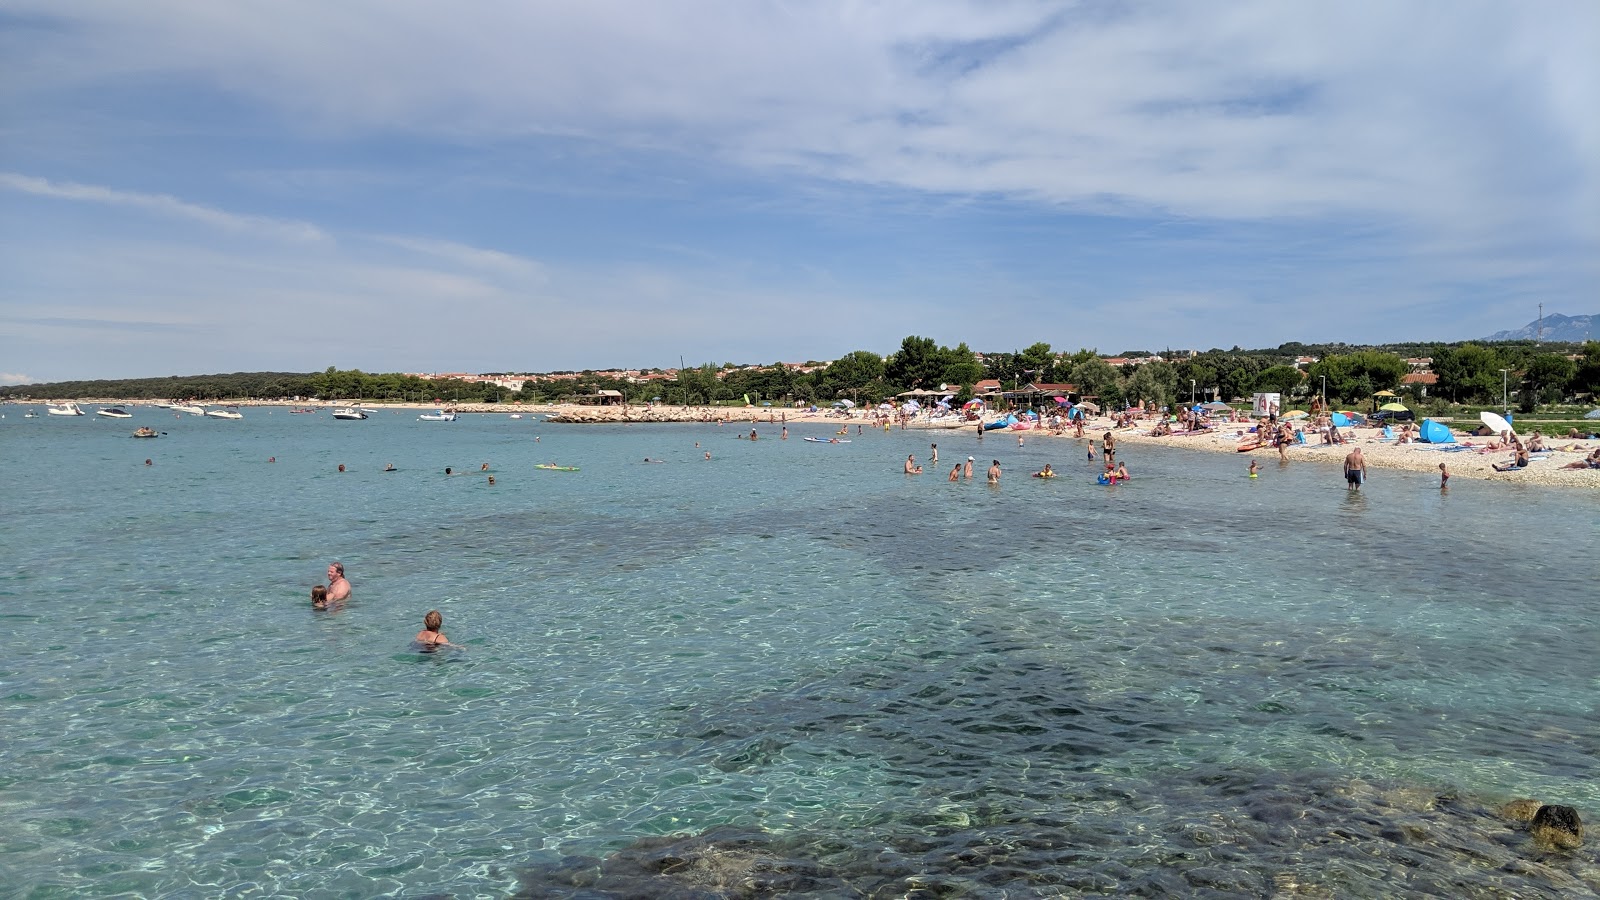 Foto af Gajac beach - populært sted blandt afslapningskendere